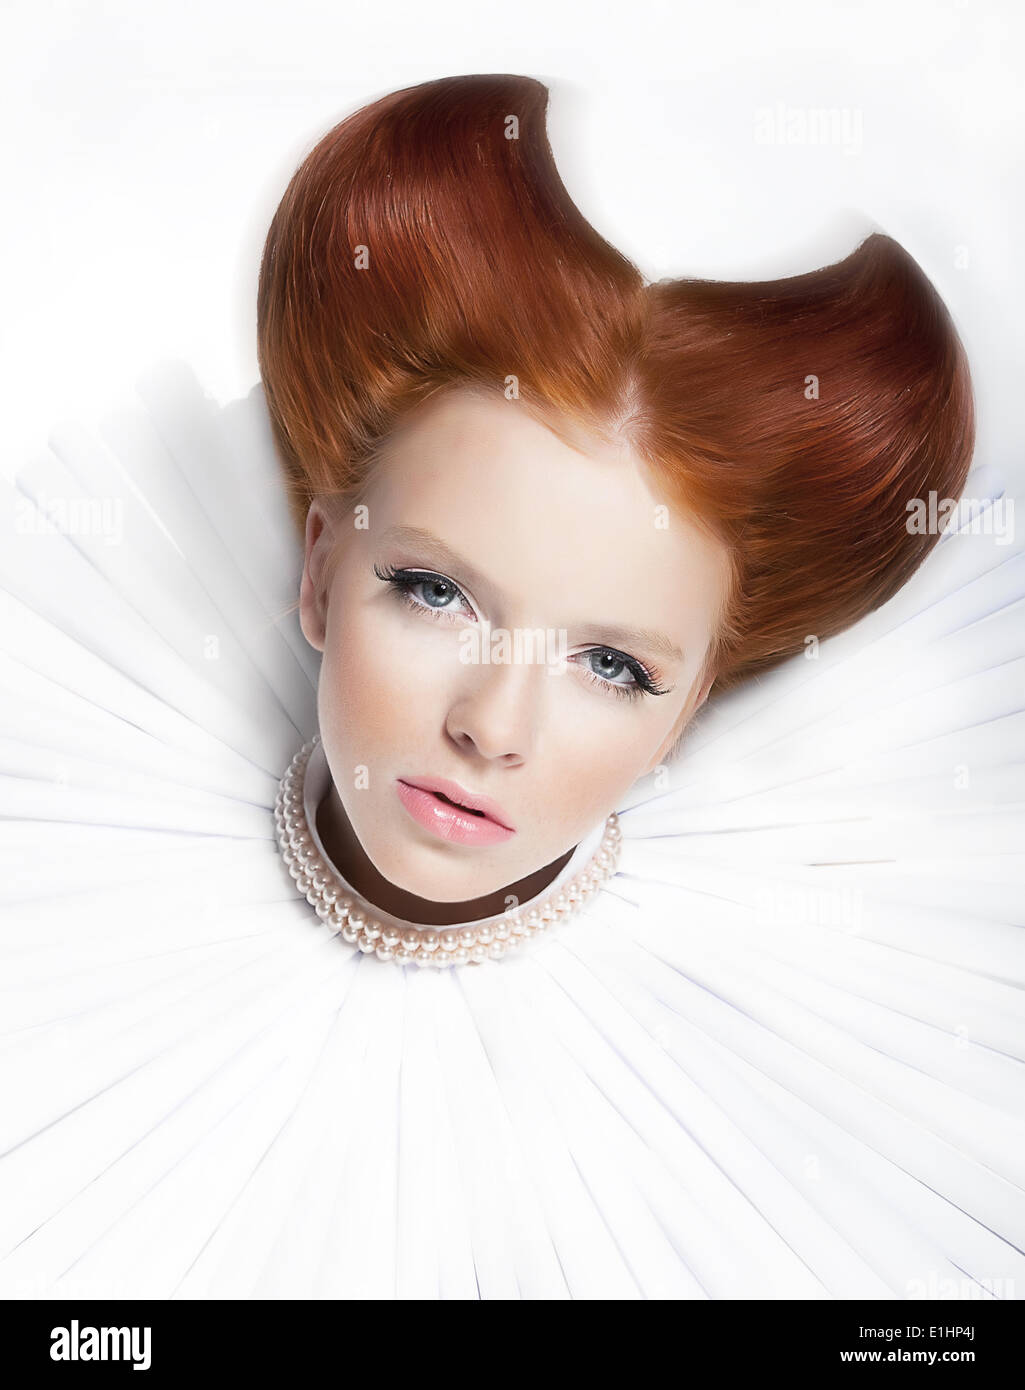 Theater. Barock-Stil - junge rote Haare Frau in weißem Jabot und Perlen. Dramatische festliches Make-up. Porträt - Reihe von hautnah Stockfoto